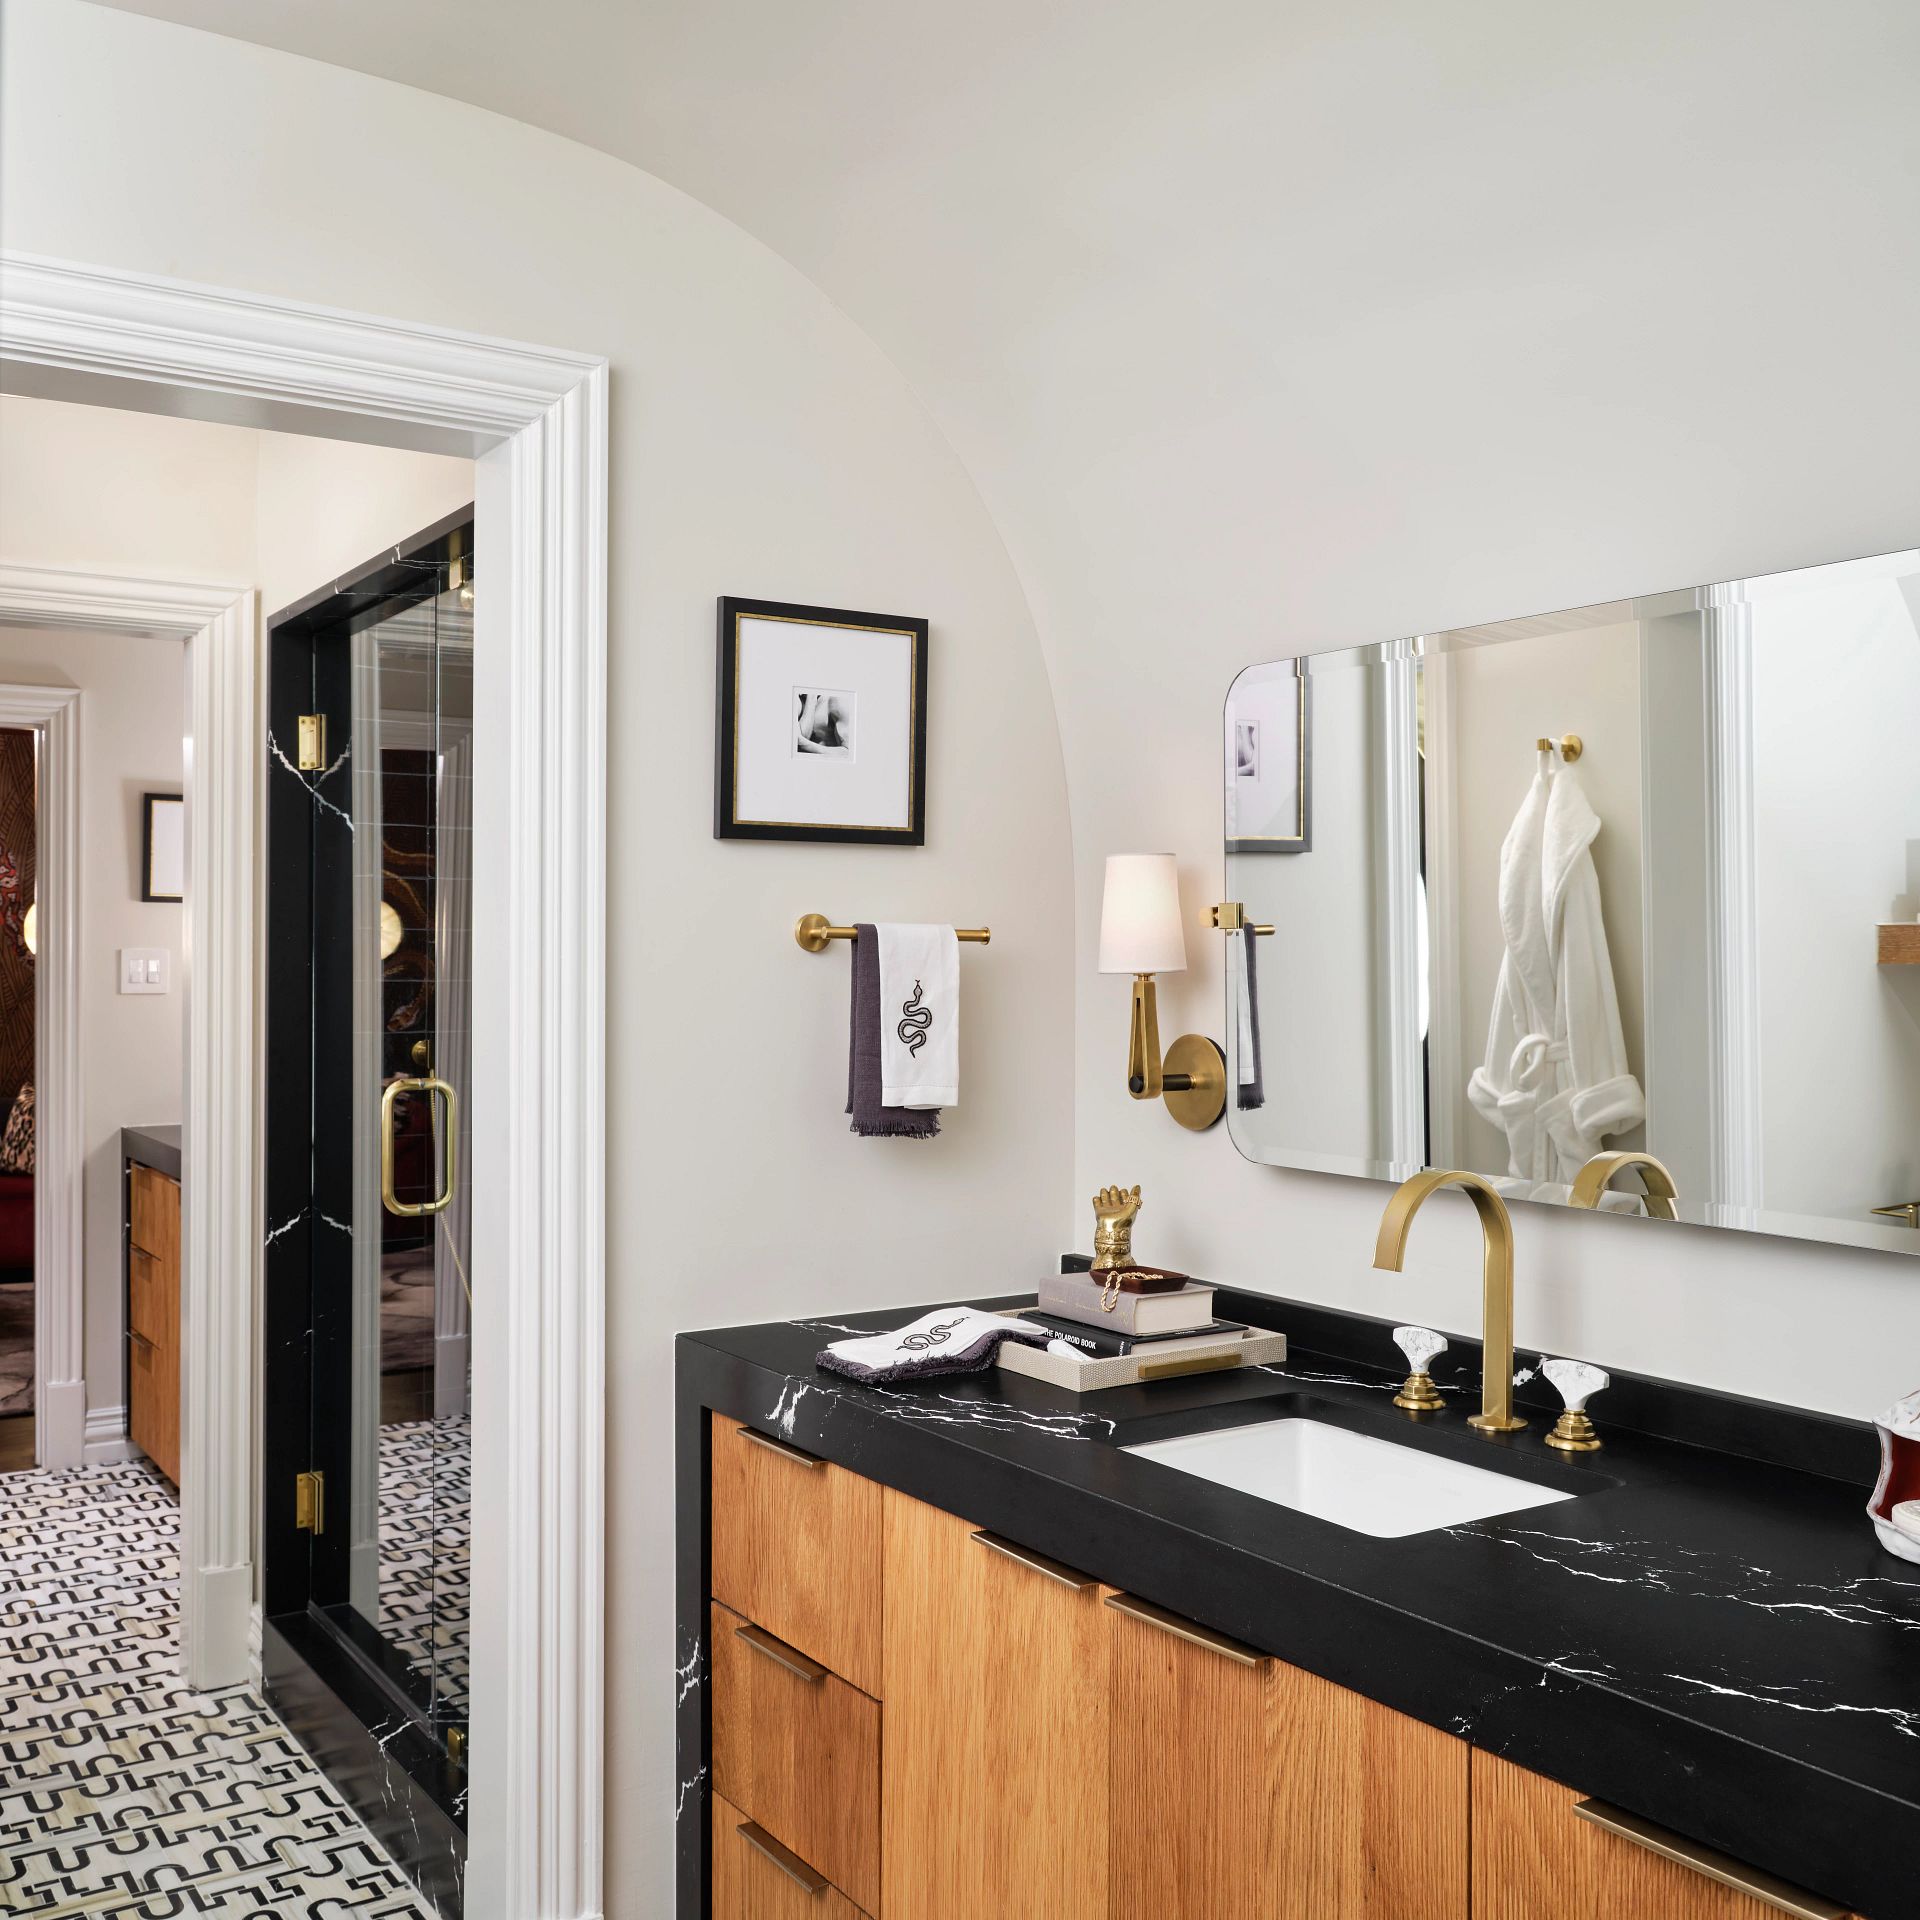 Quartz Bathroom Countertops | Quartz uses in the bathrroom